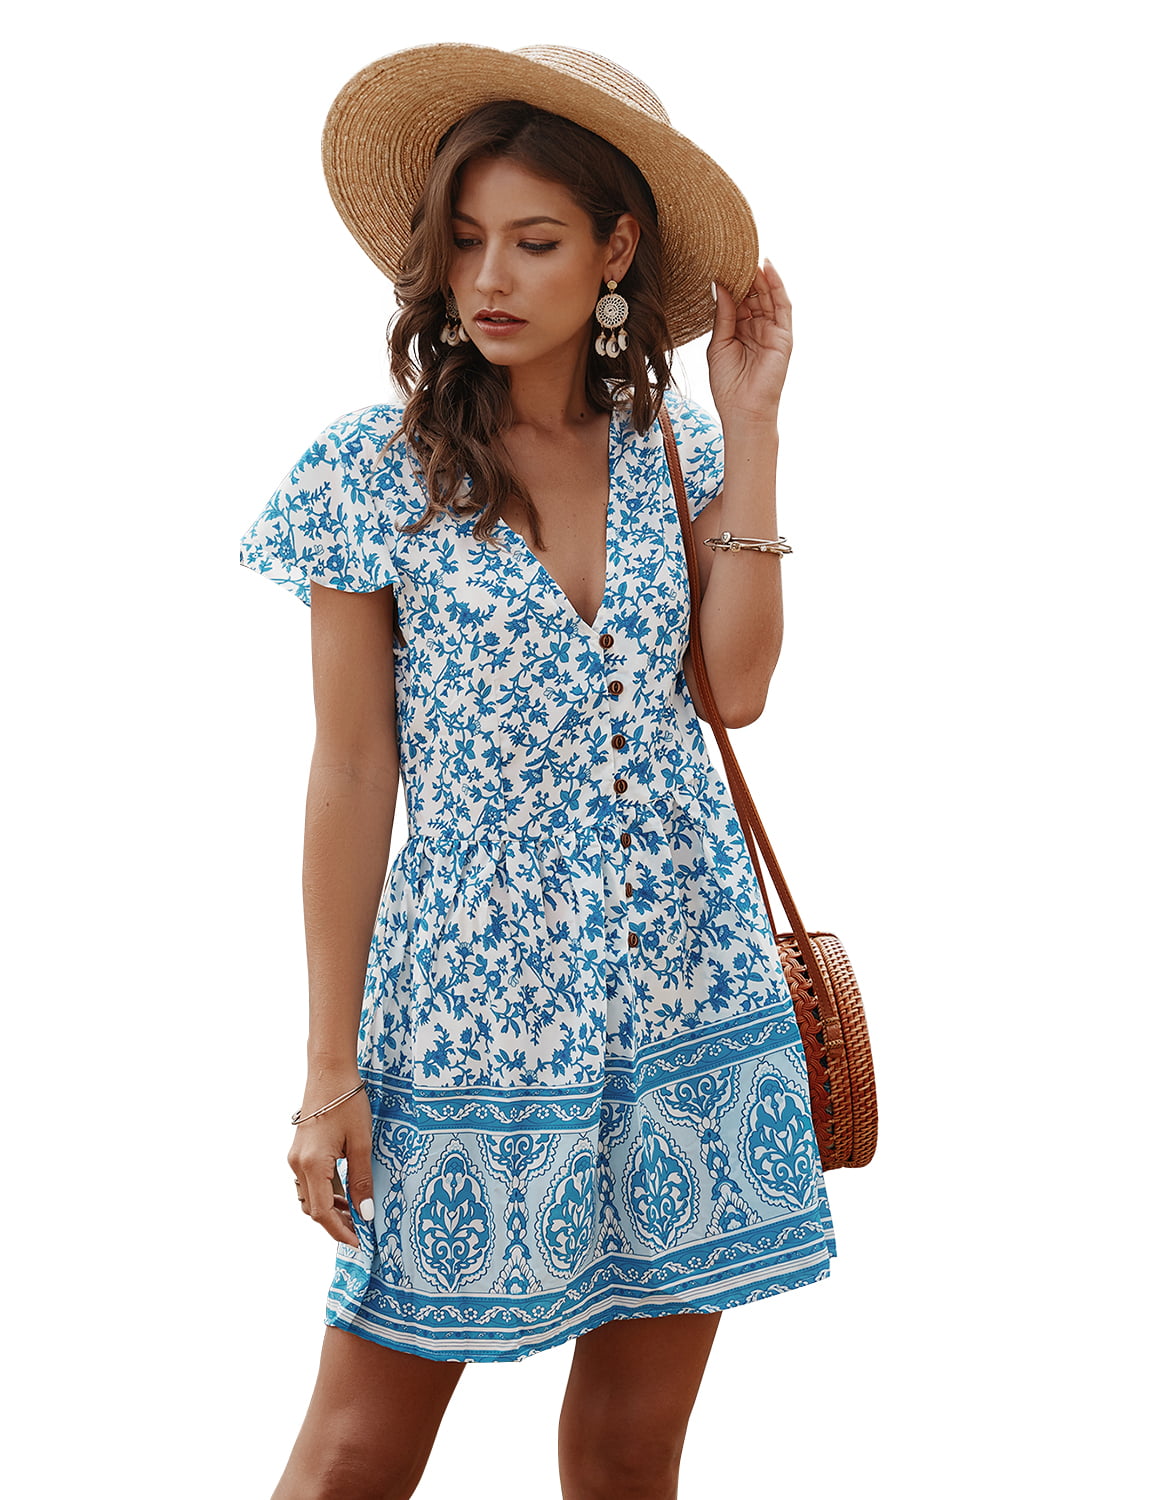 Top She Womens Causal Summer Dress Floral Print Short Sleeve Deep V